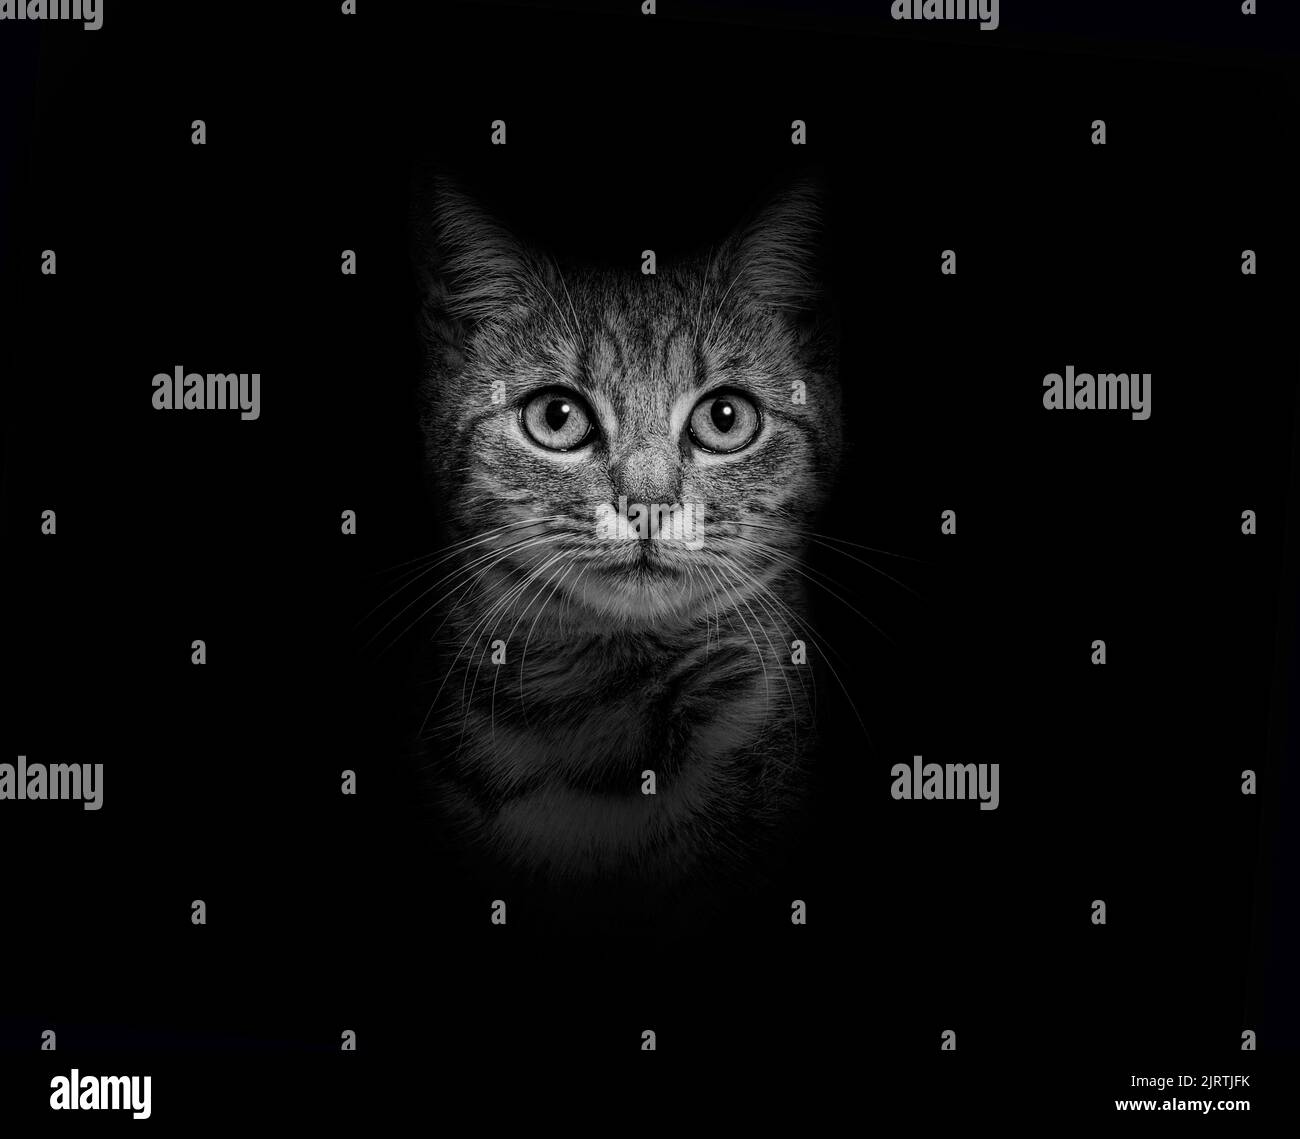 Bianco e nero Ritratto di un gatto Tabby a righe grigie di razza mista su sfondo nero Foto Stock